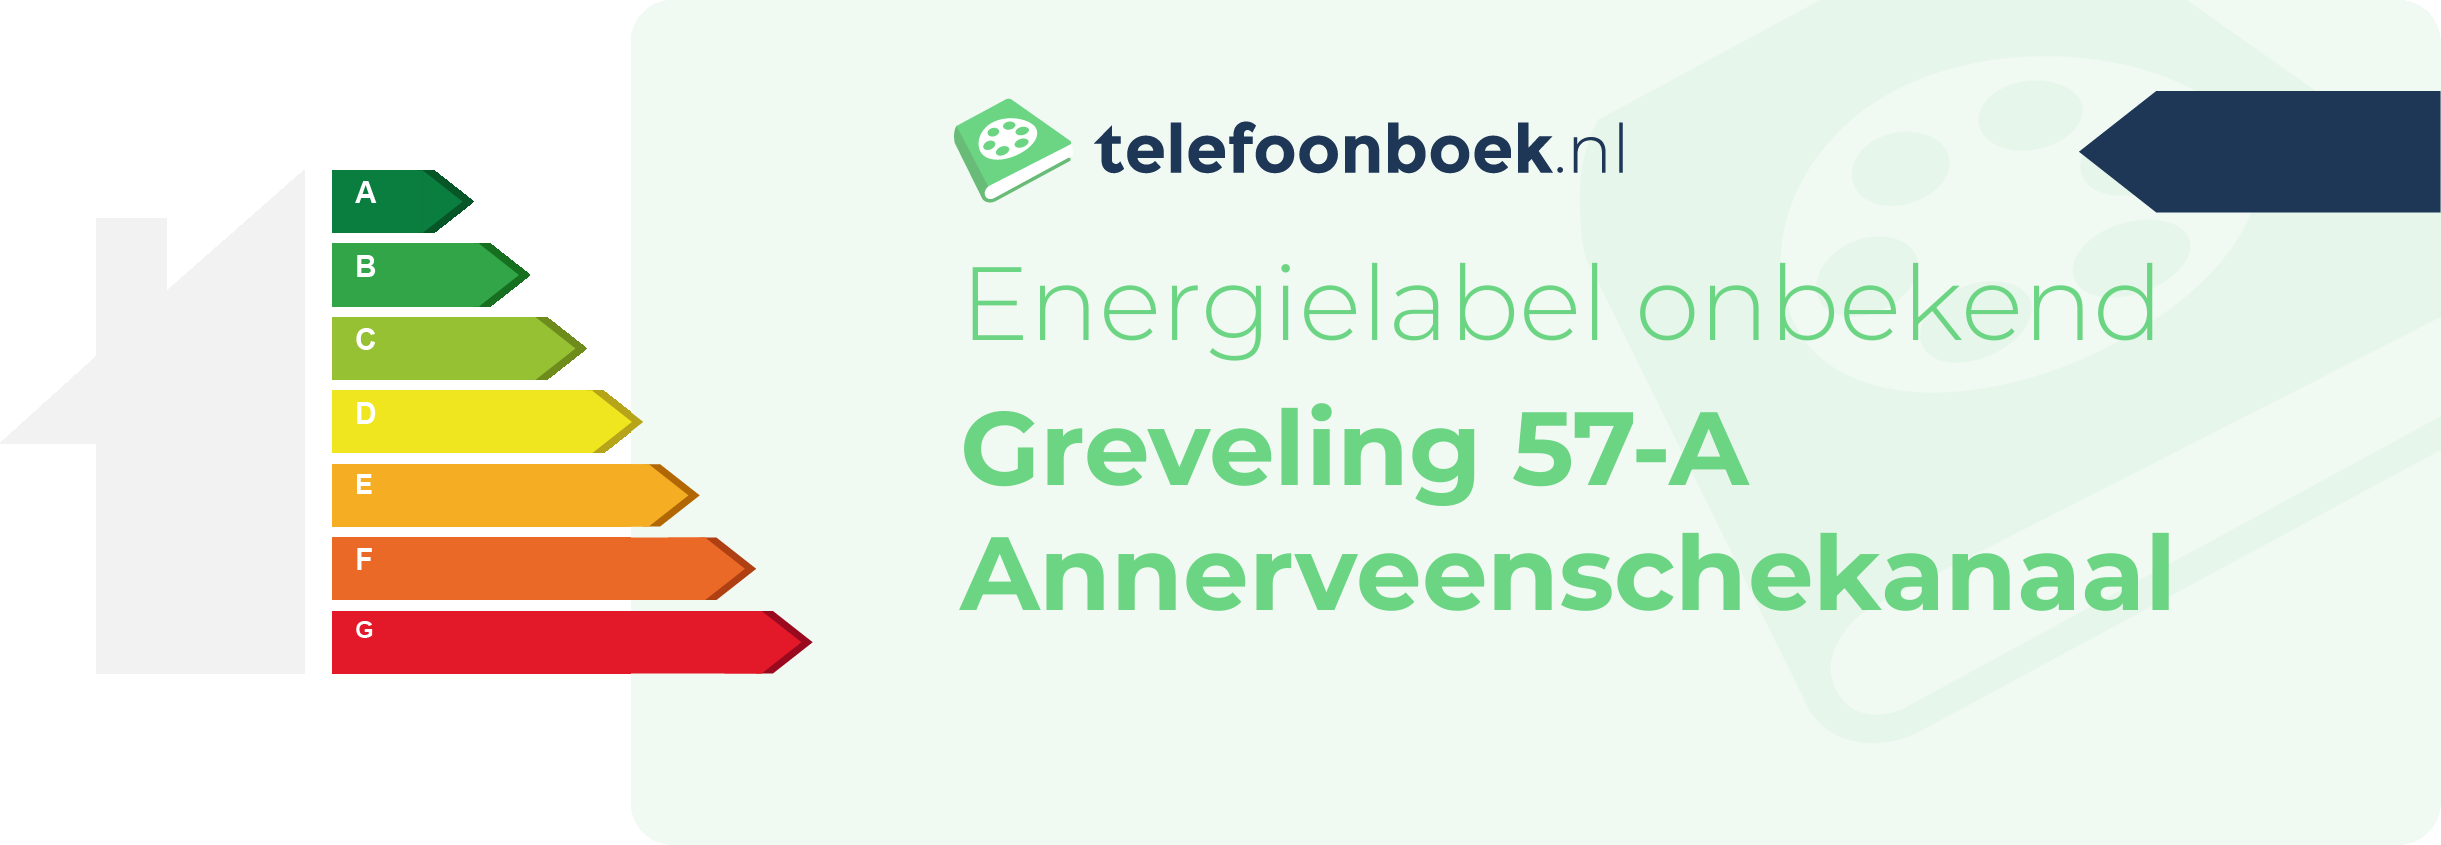 Energielabel Greveling 57-A Annerveenschekanaal